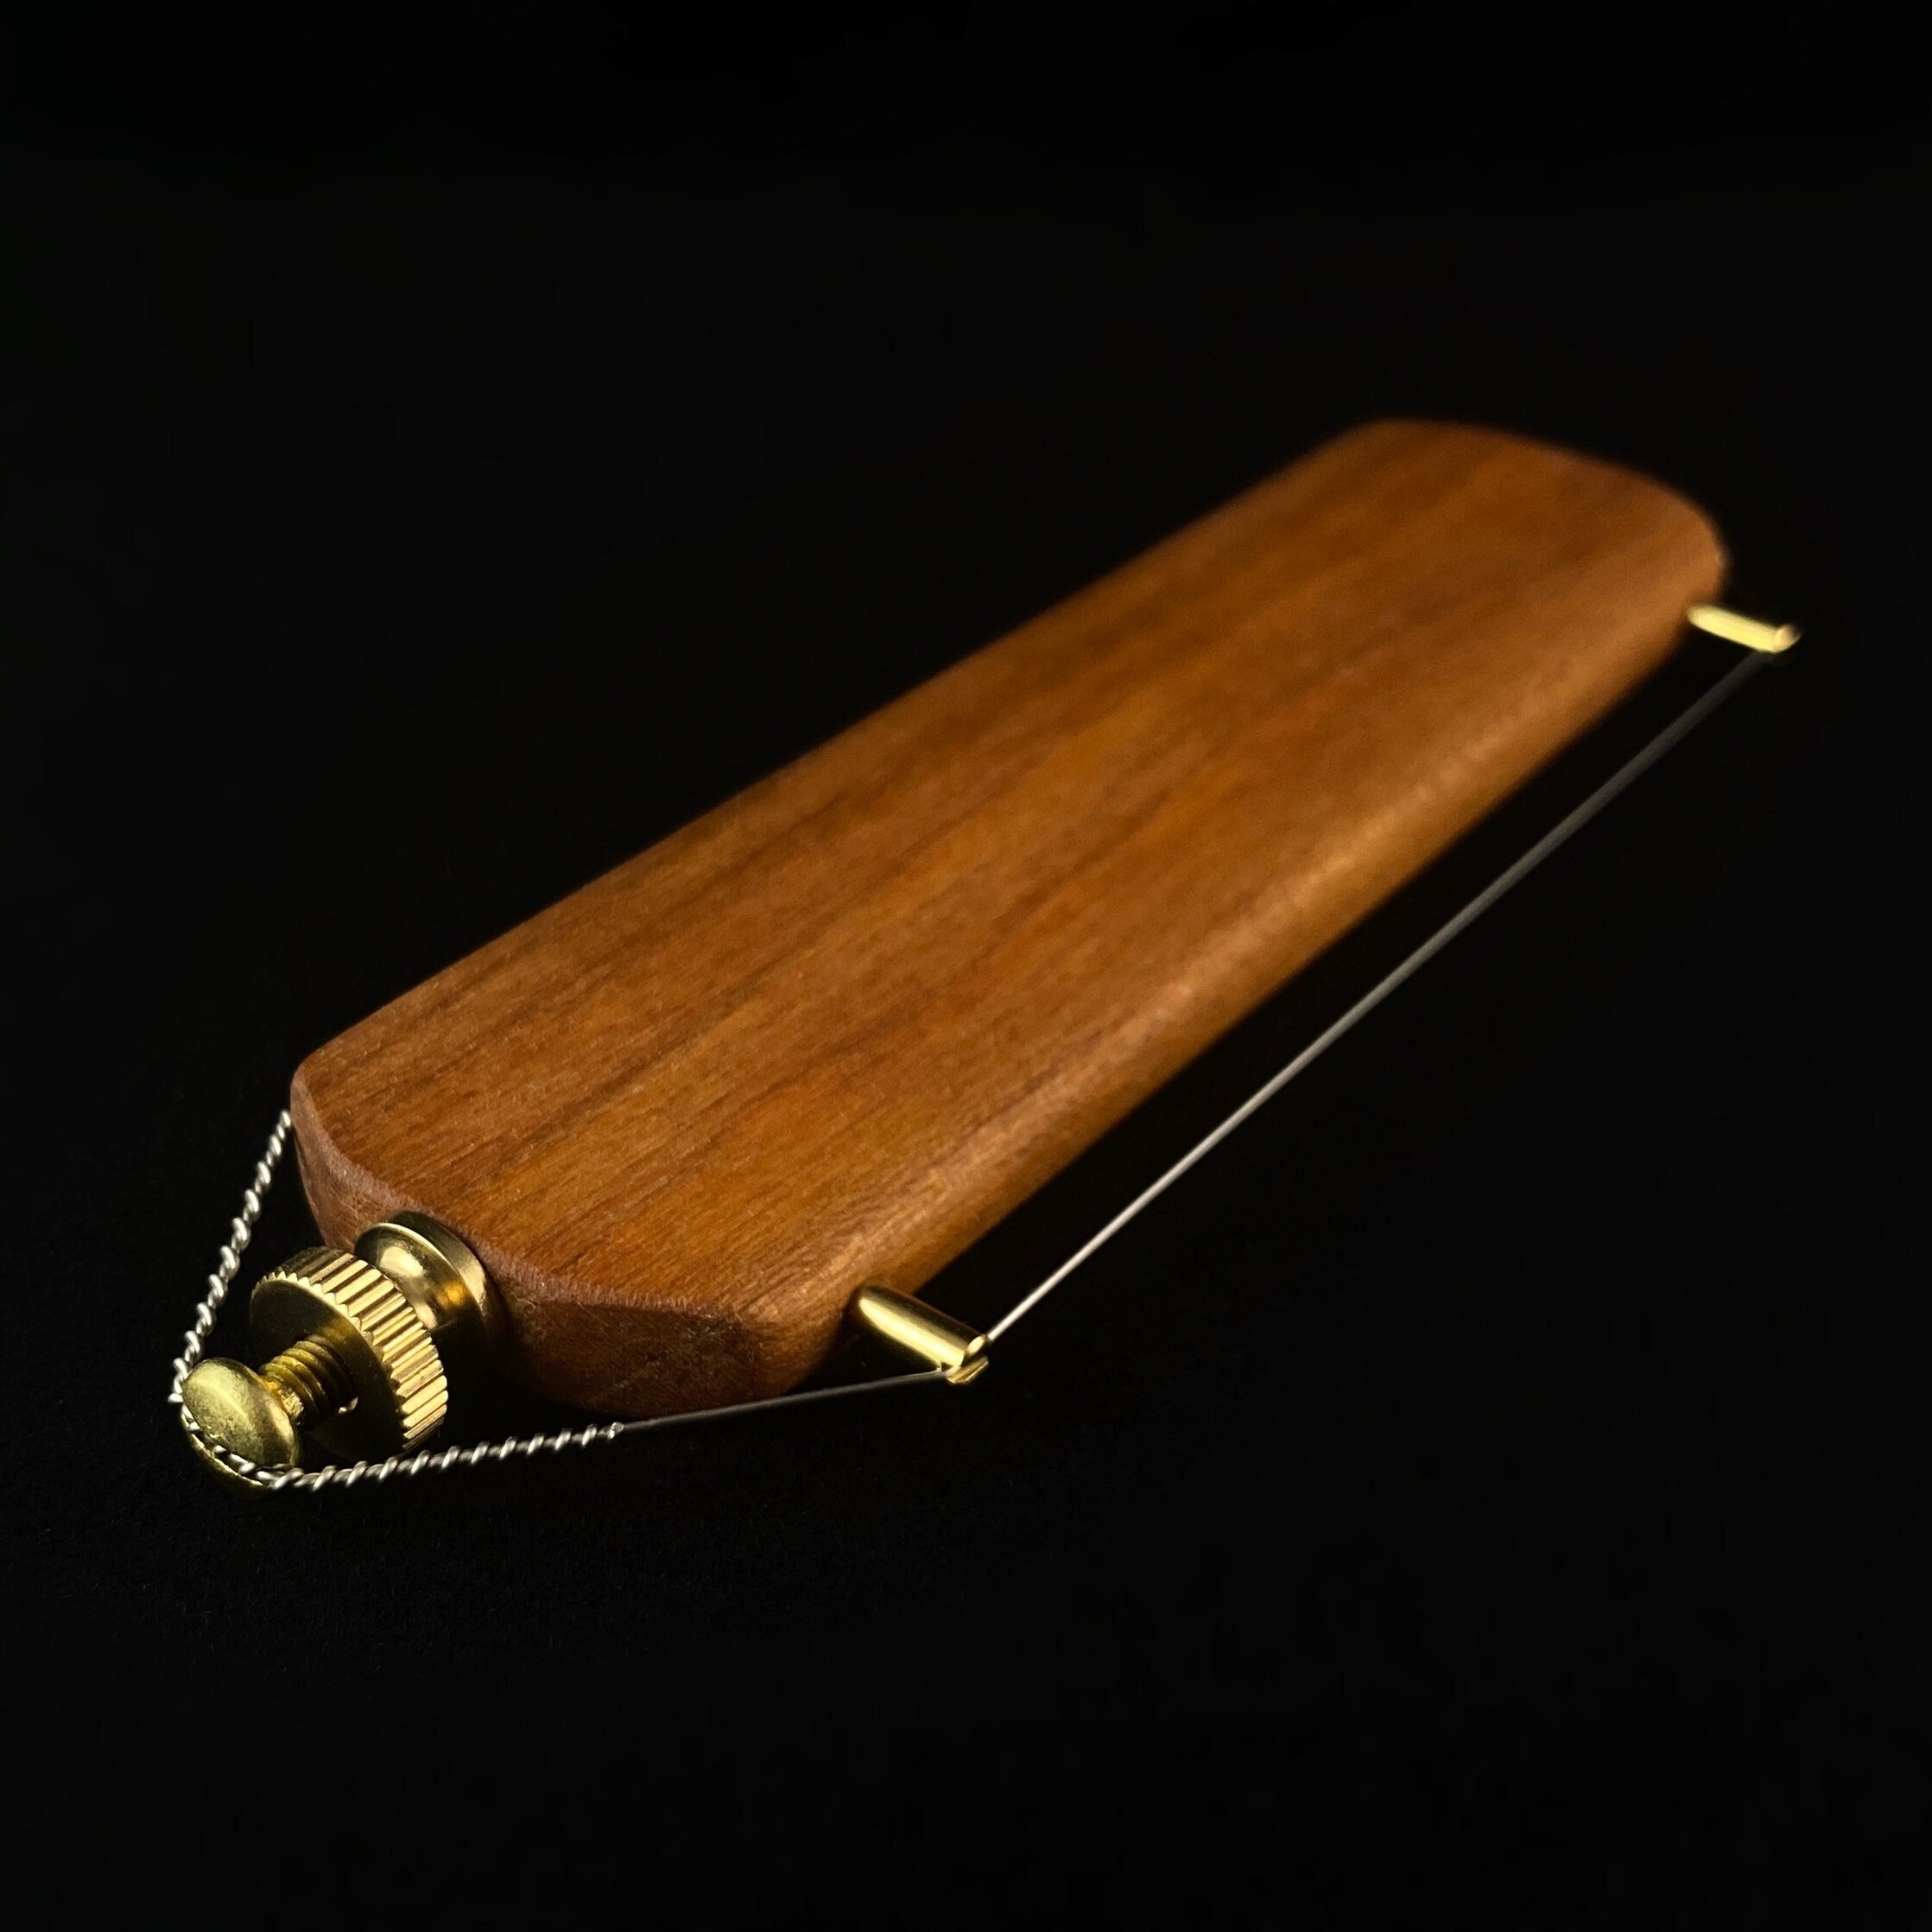 Cherry Wood Handheld Cheese Slicer — Window Panes MDI